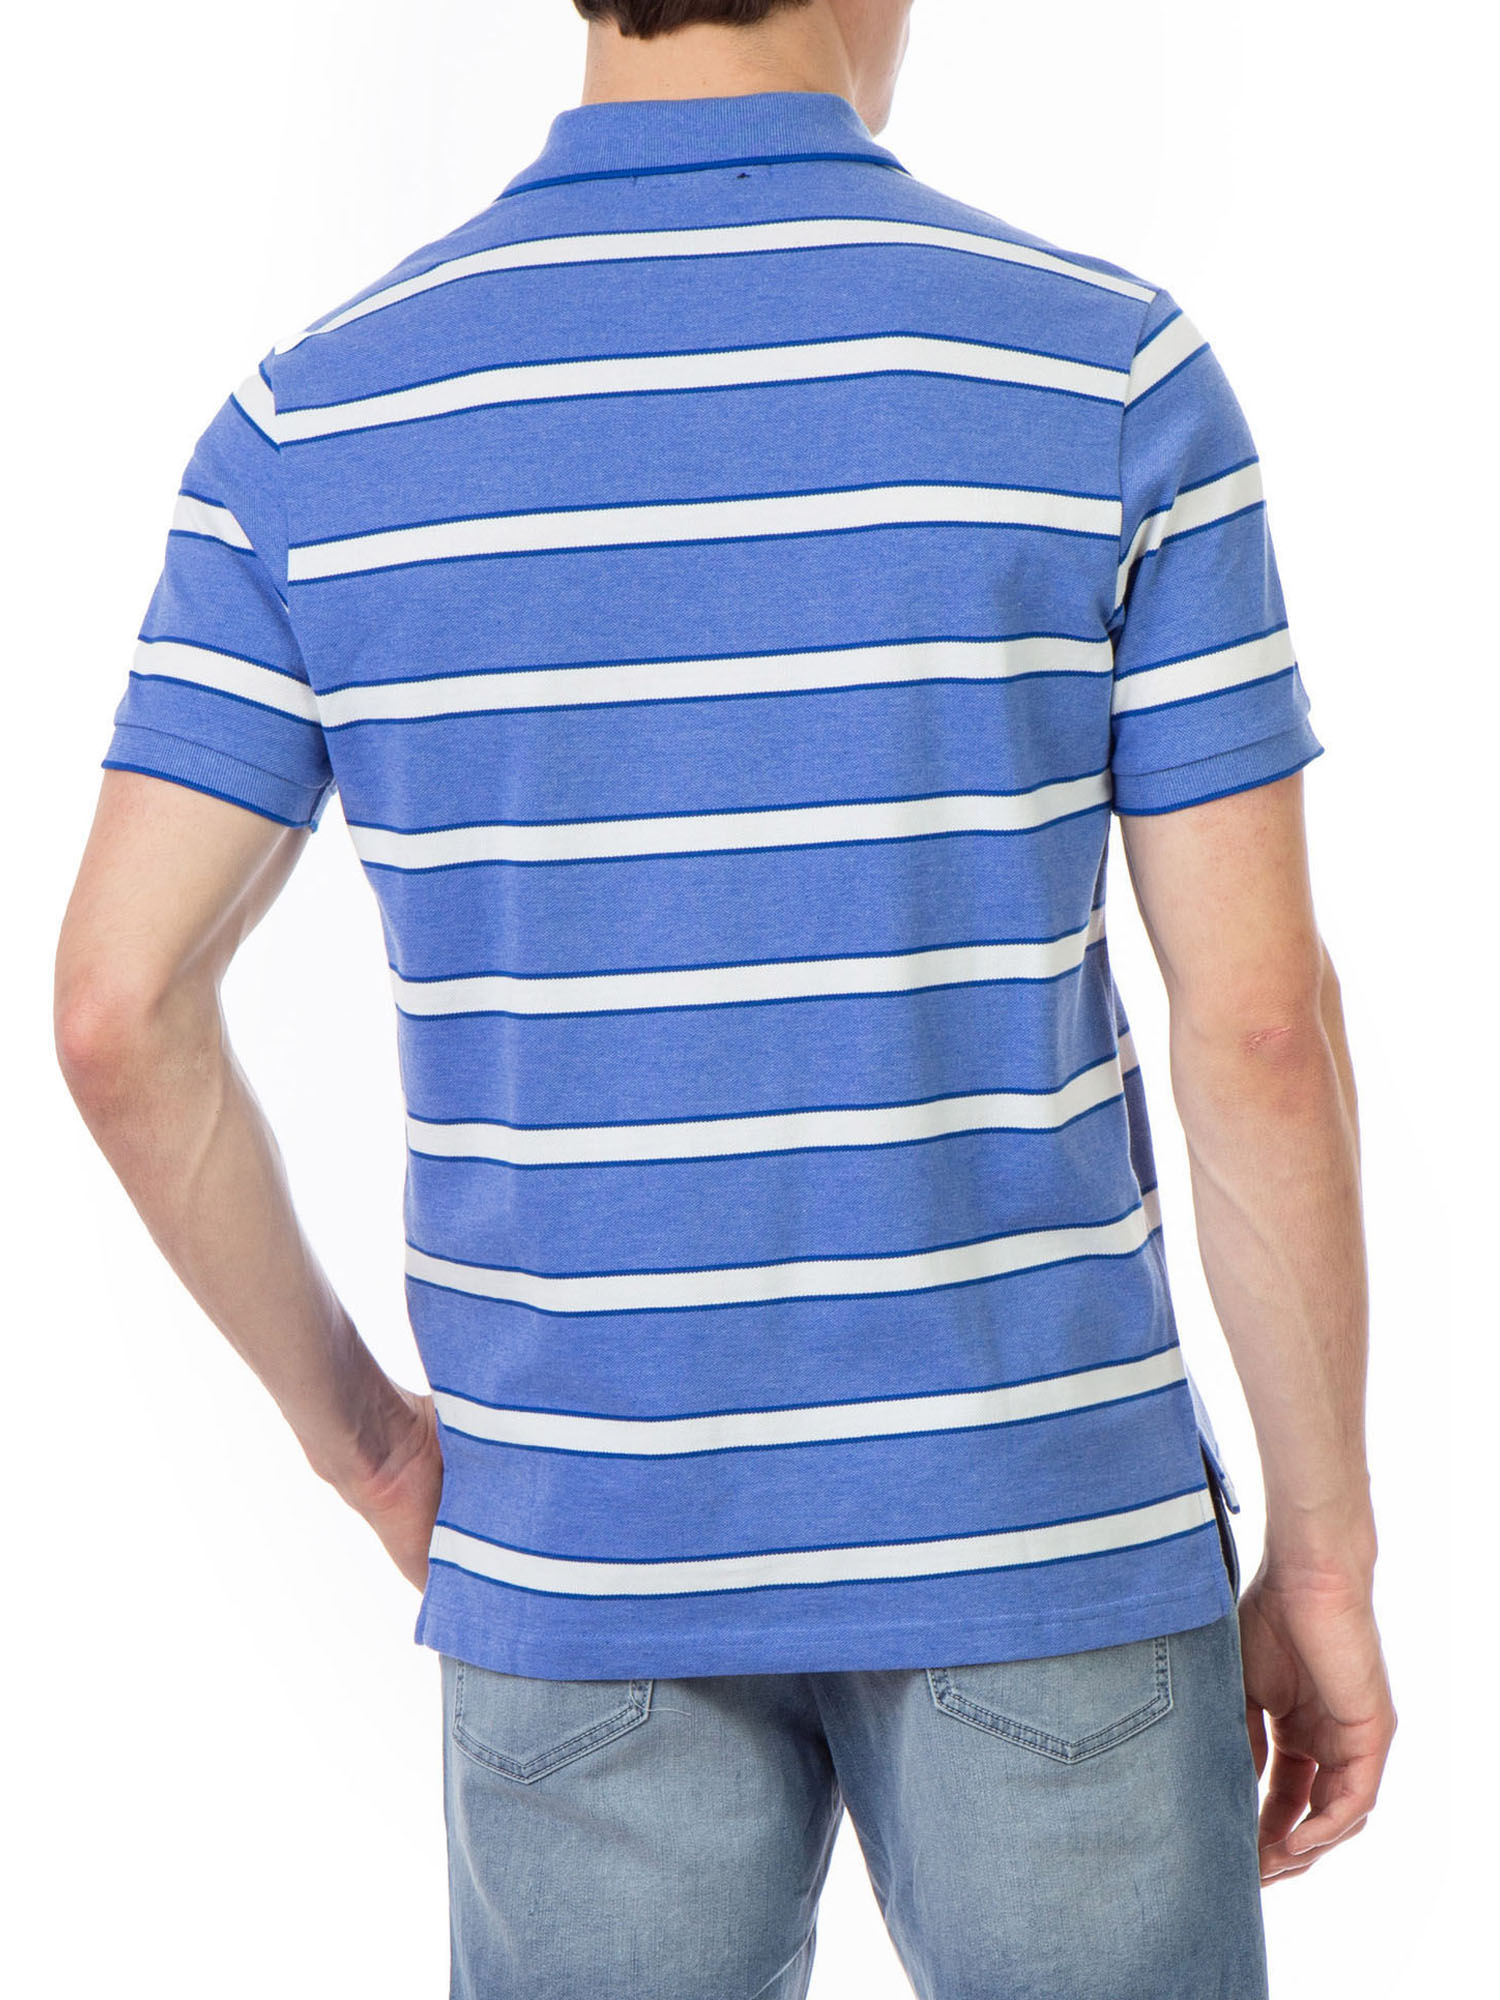 U.S. Polo Assn. Men's Striped Pique Polo Shirt - image 3 of 5